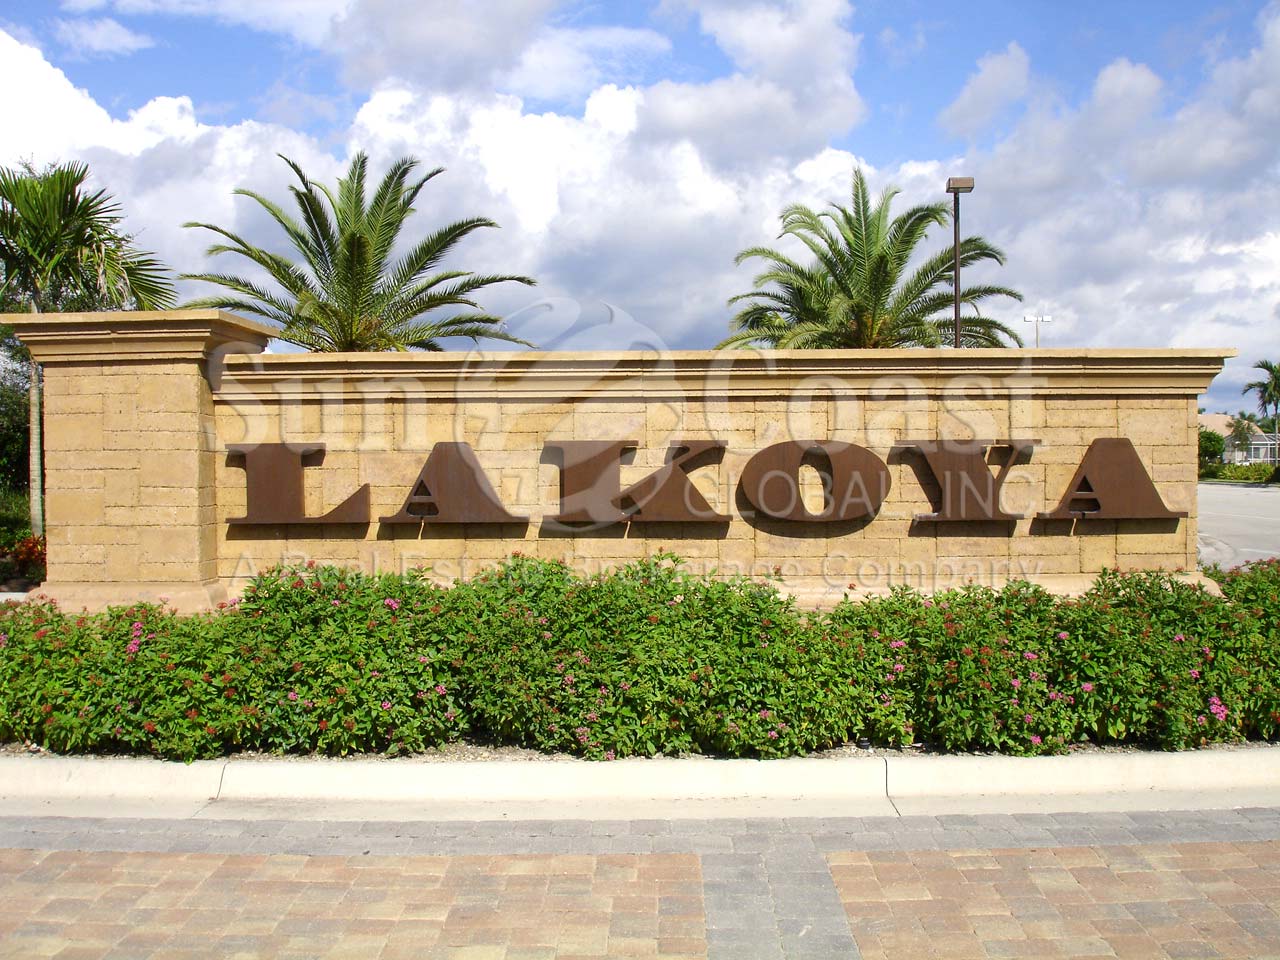 Lakoya signage